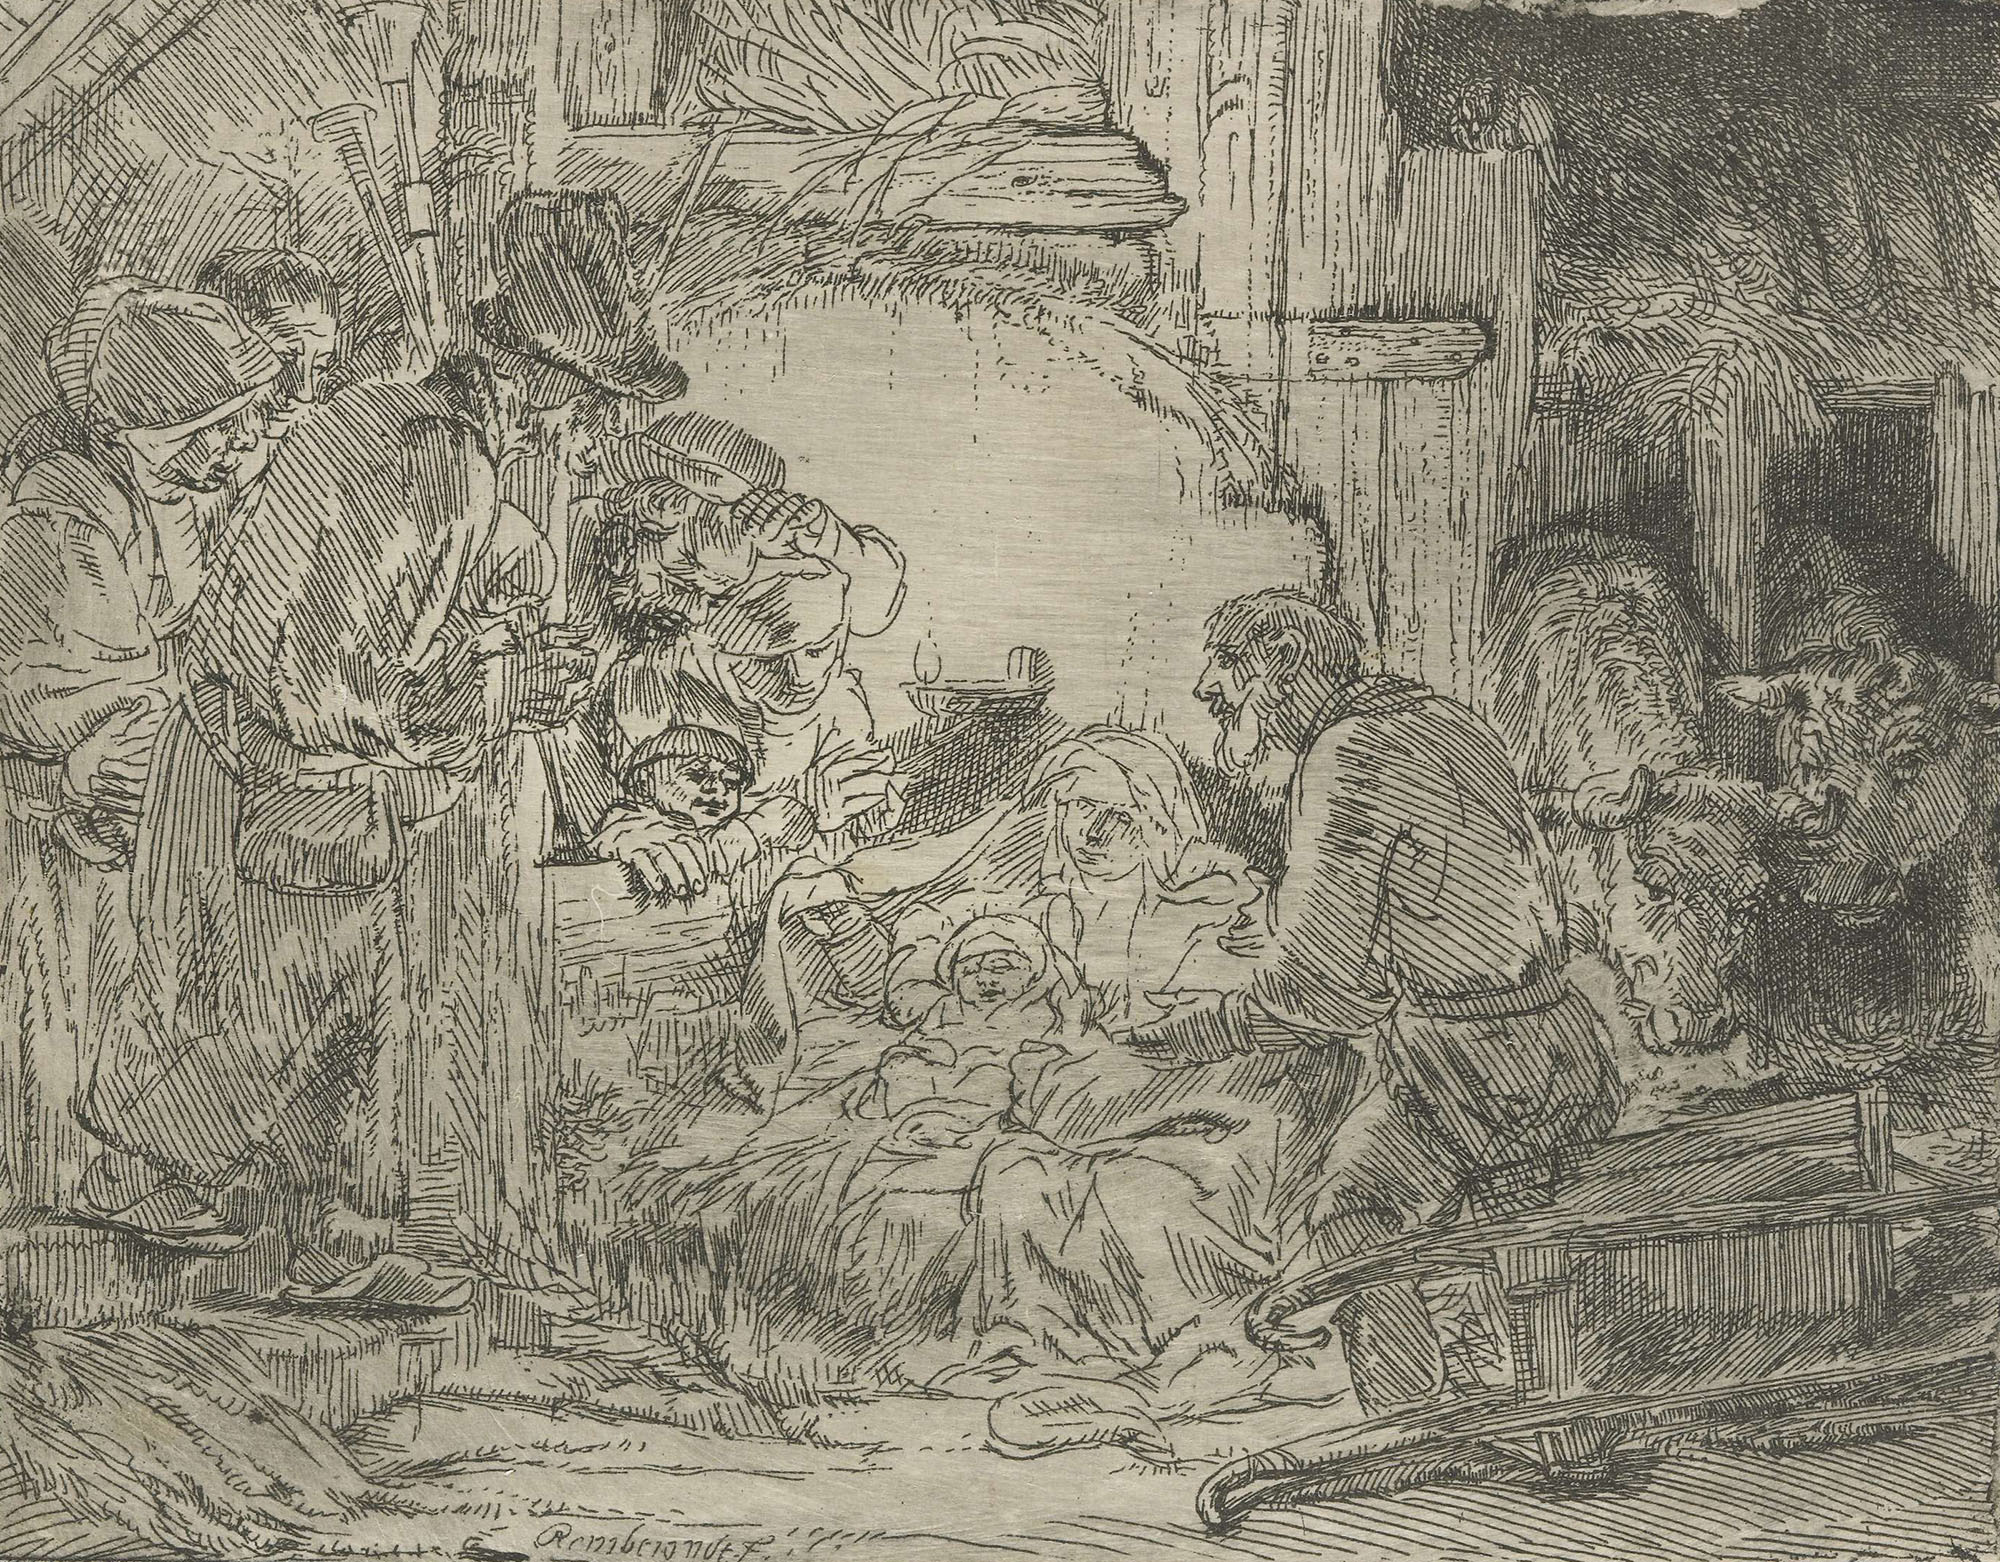 Рембрандт Харменс ван Рейн. "Поклонение пастухов". 1652.